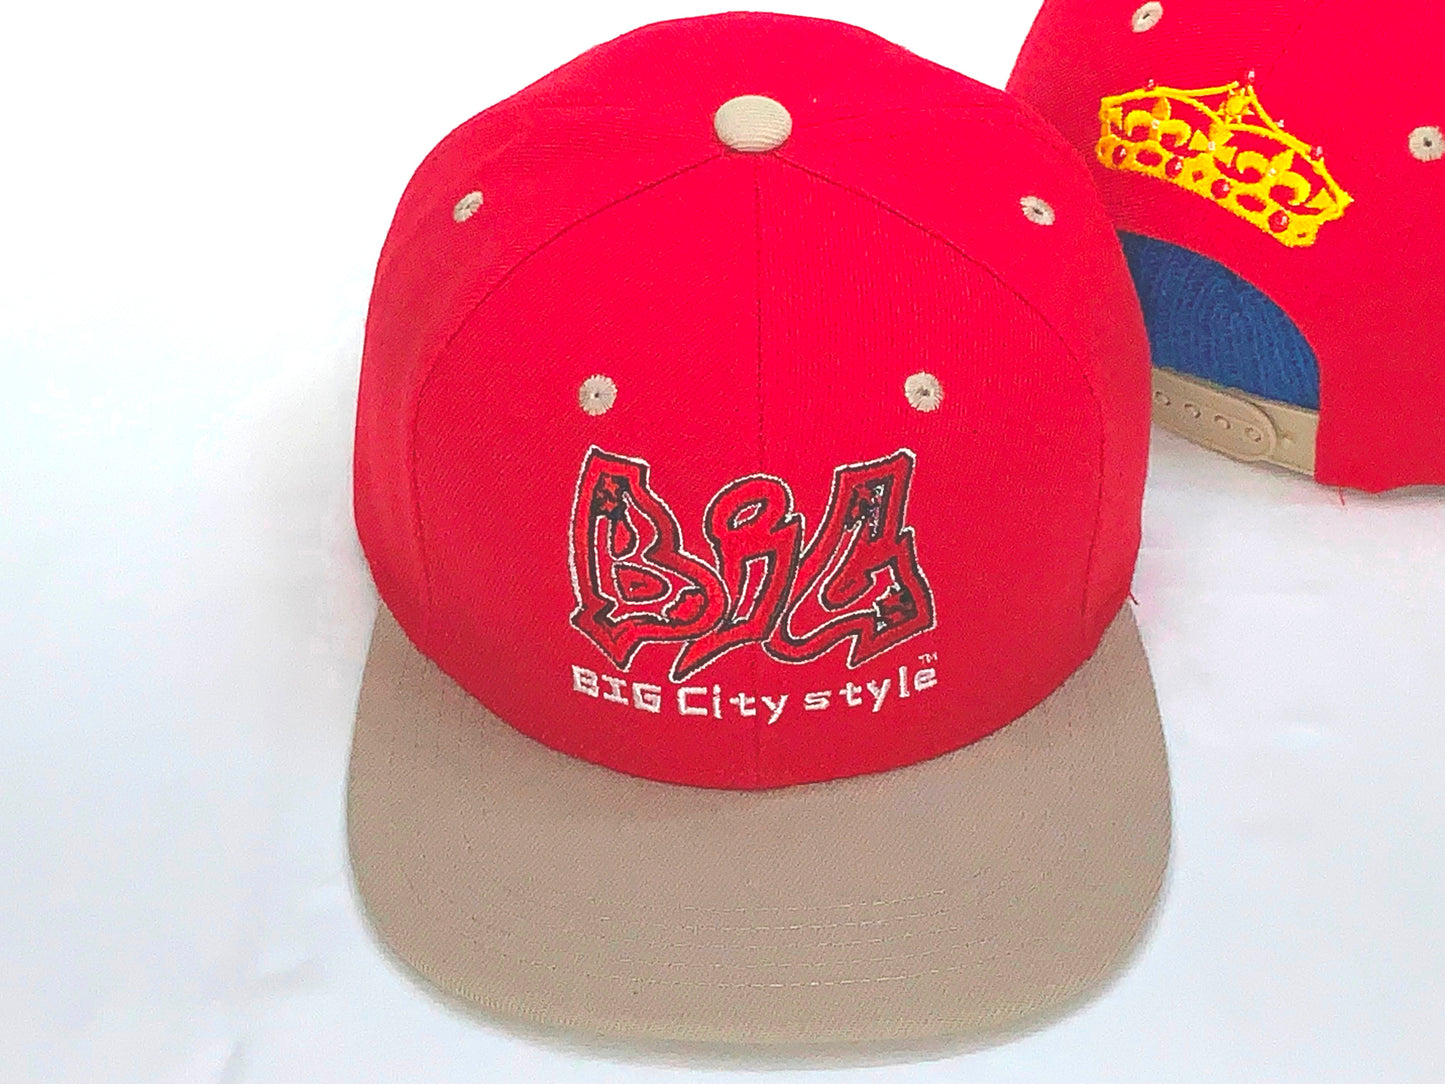 BIG City Snap caps